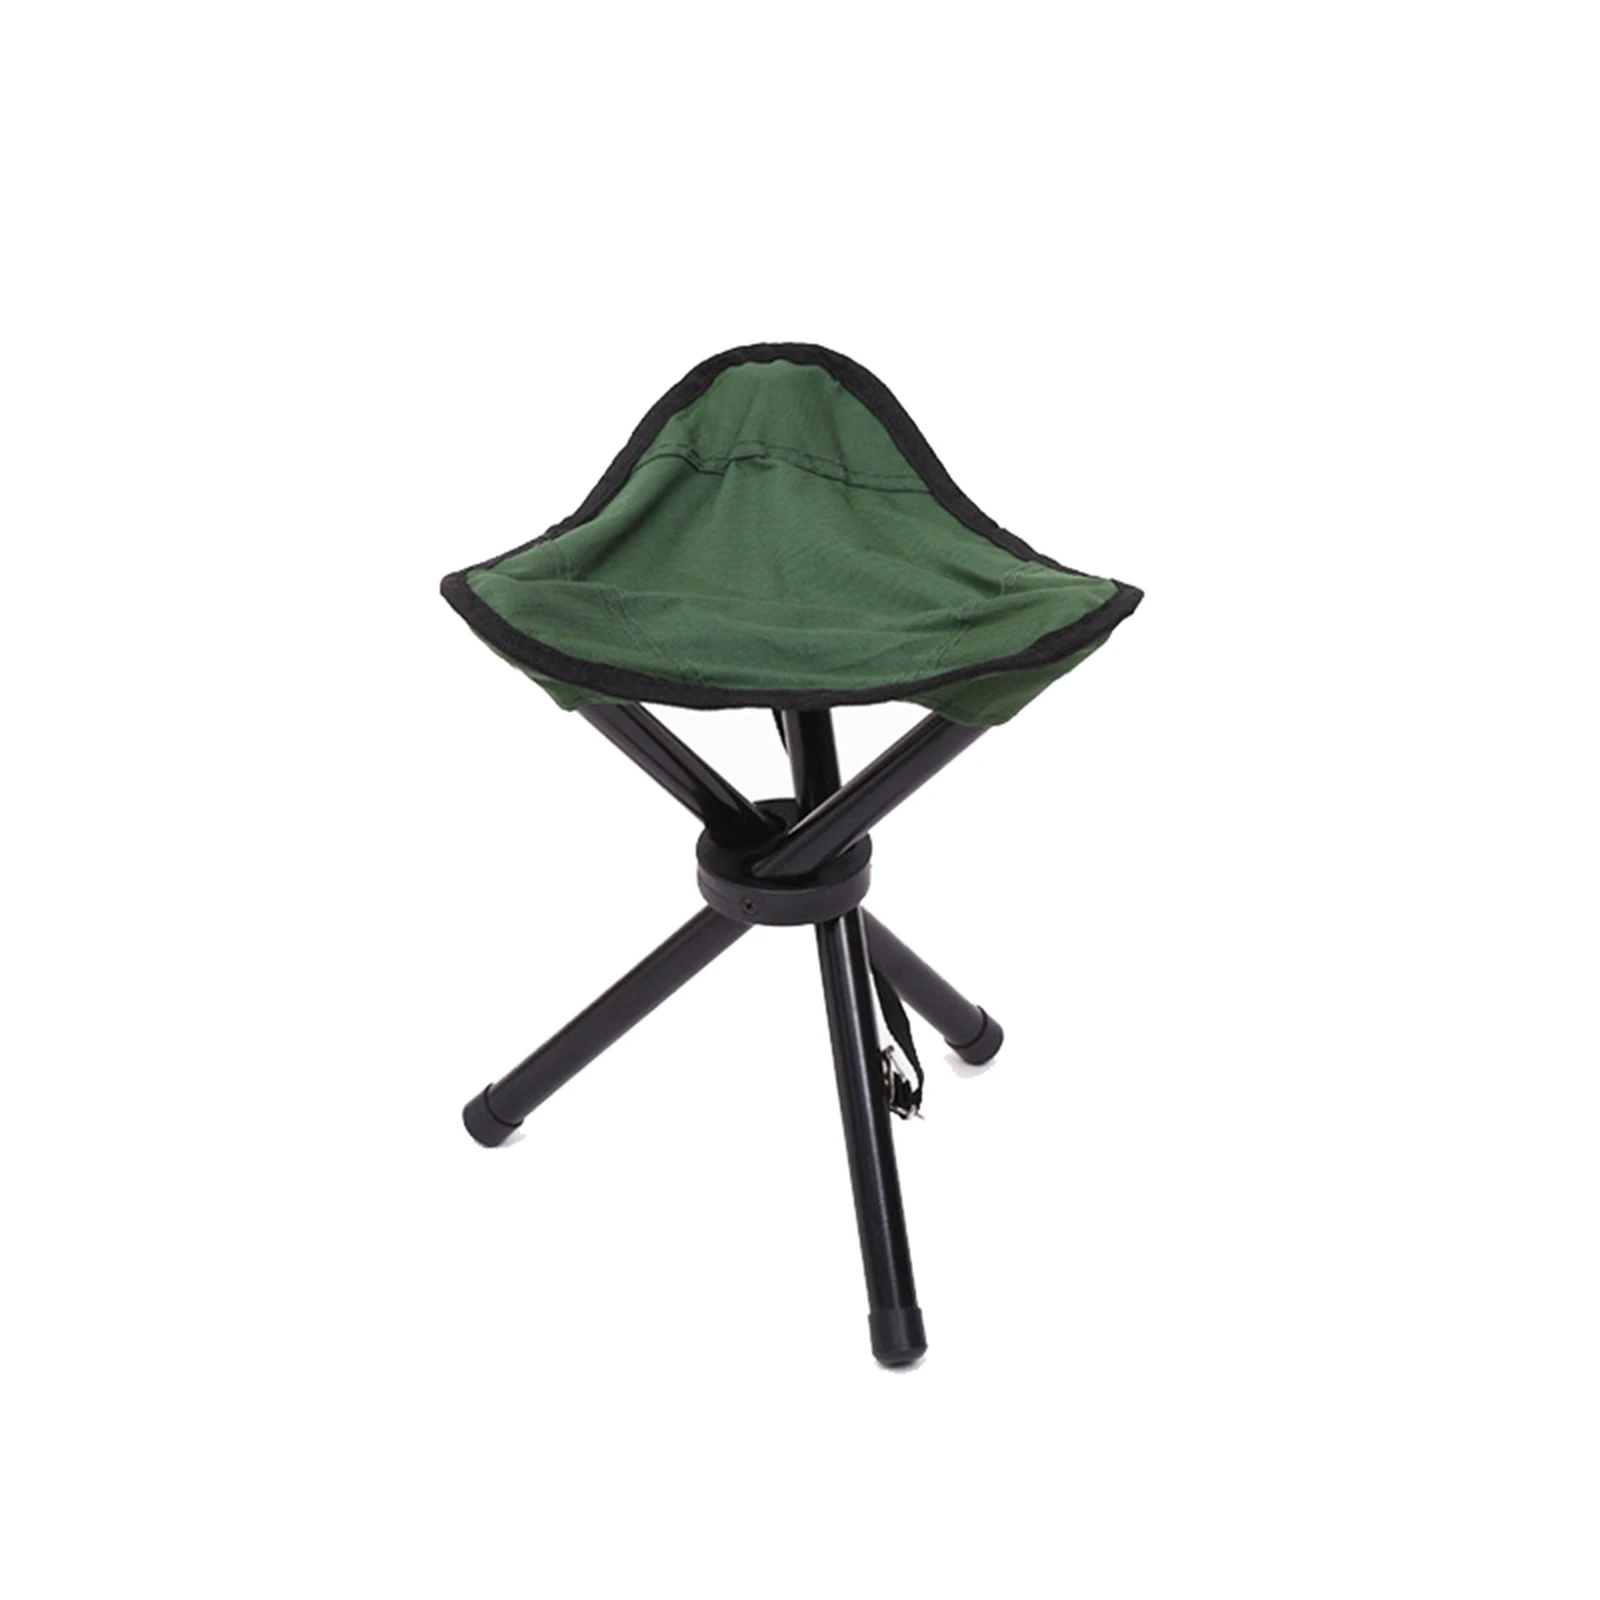 Dağcılık Üç Bacak Tabure Katlanır Kamp Tezgahı Taşınabilir Balıkçılık Sandalye Kamp için Açık Ultralight Mini Kamp Tezgahı Görüntü 3